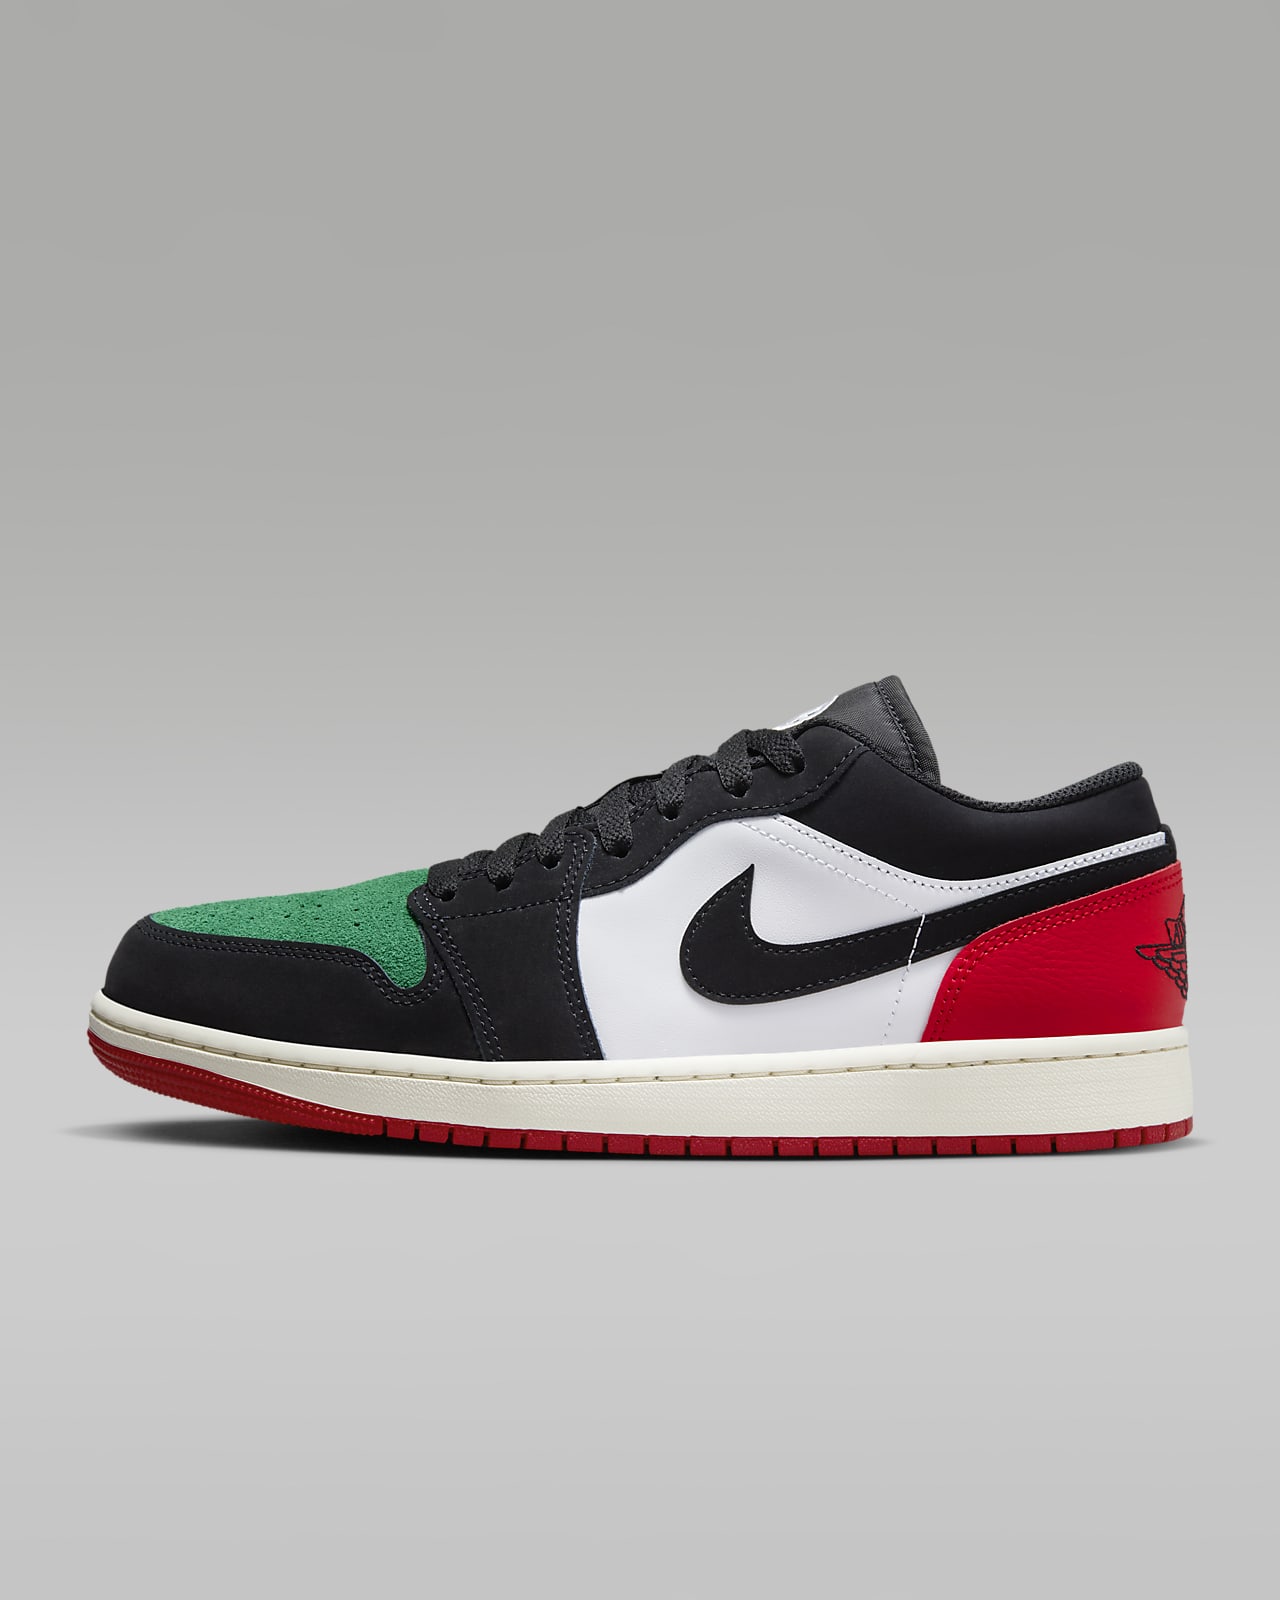 Nike Air Jordan 1 Low Green Toe: PH price, release